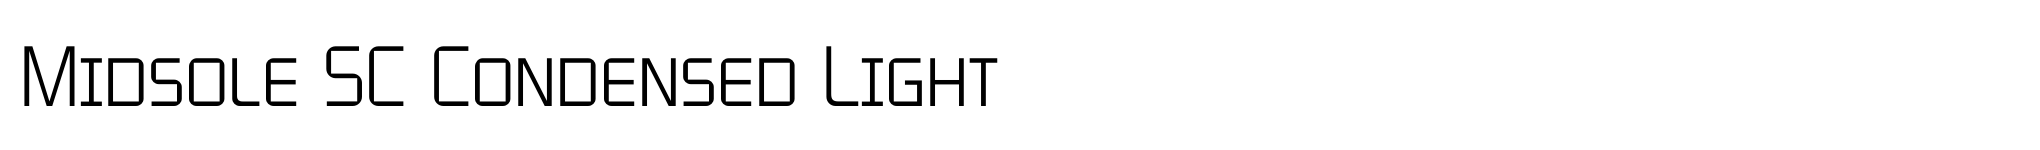 Midsole SC Condensed Light image